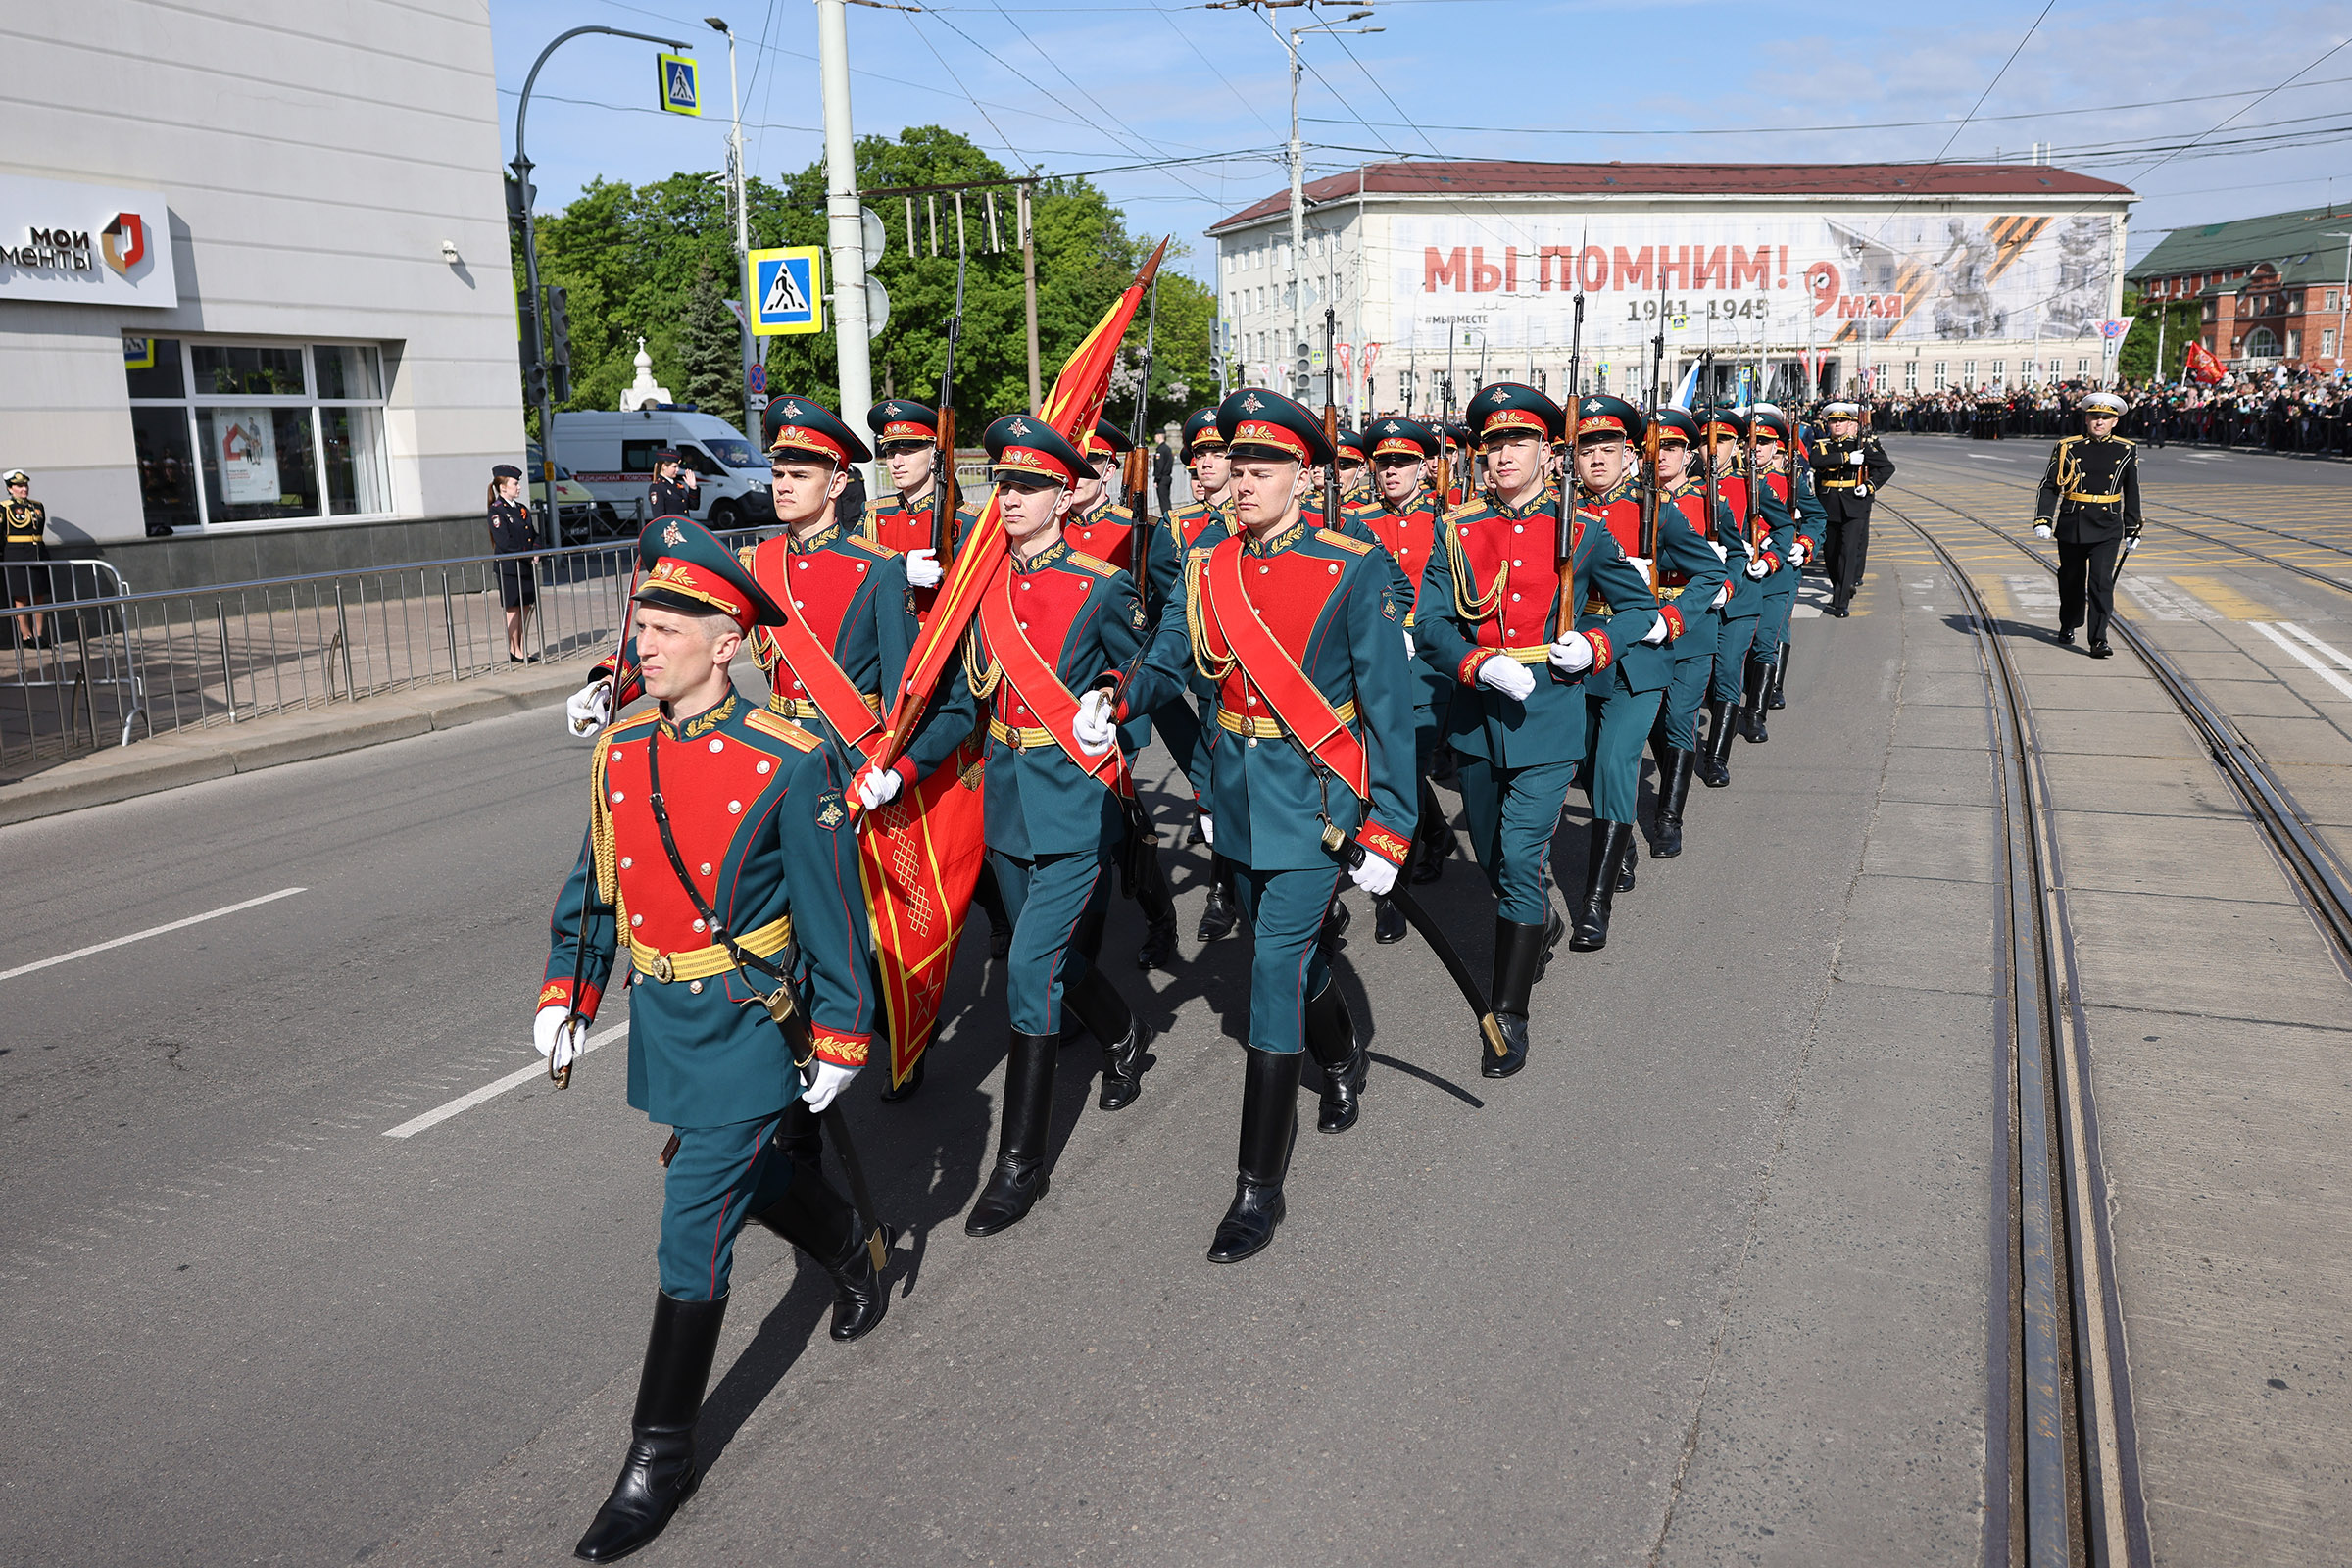 Военнослужащие парадных расчетов на военном параде в Калининграде.